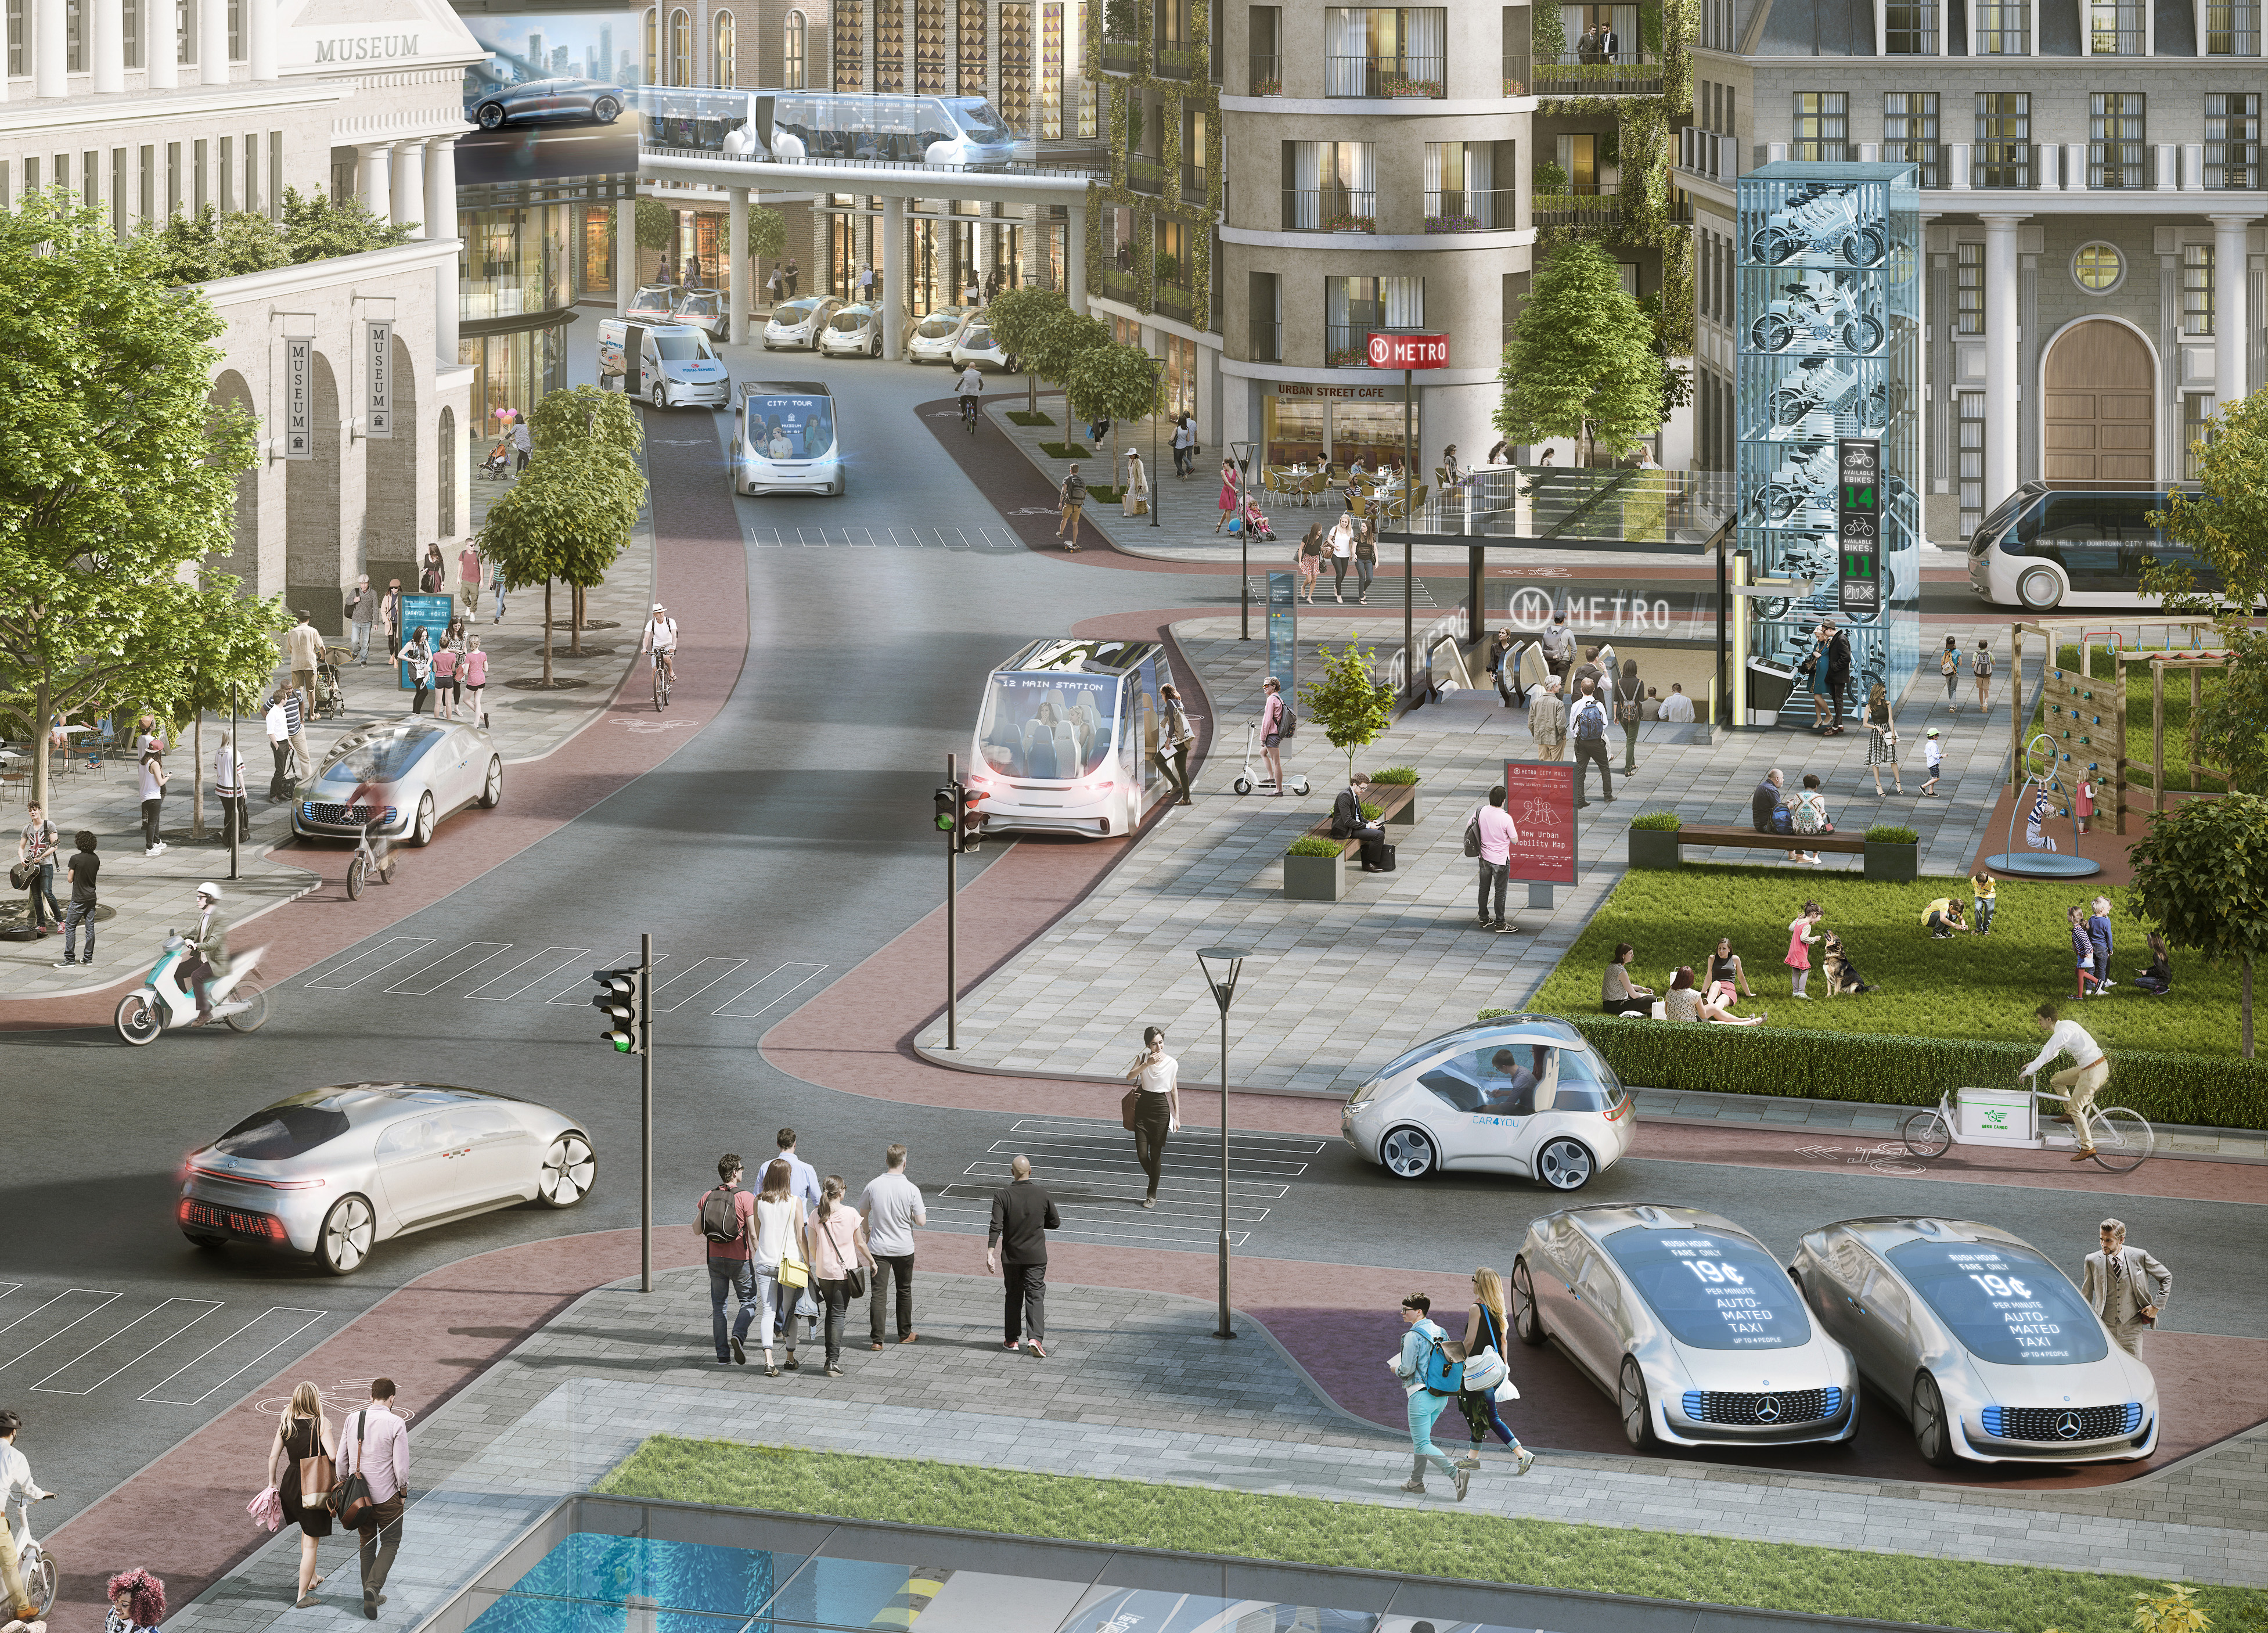 La guida autonoma nelle città: Bosch e Daimler selezionano la piattaforma di NVIDIA per l’AI